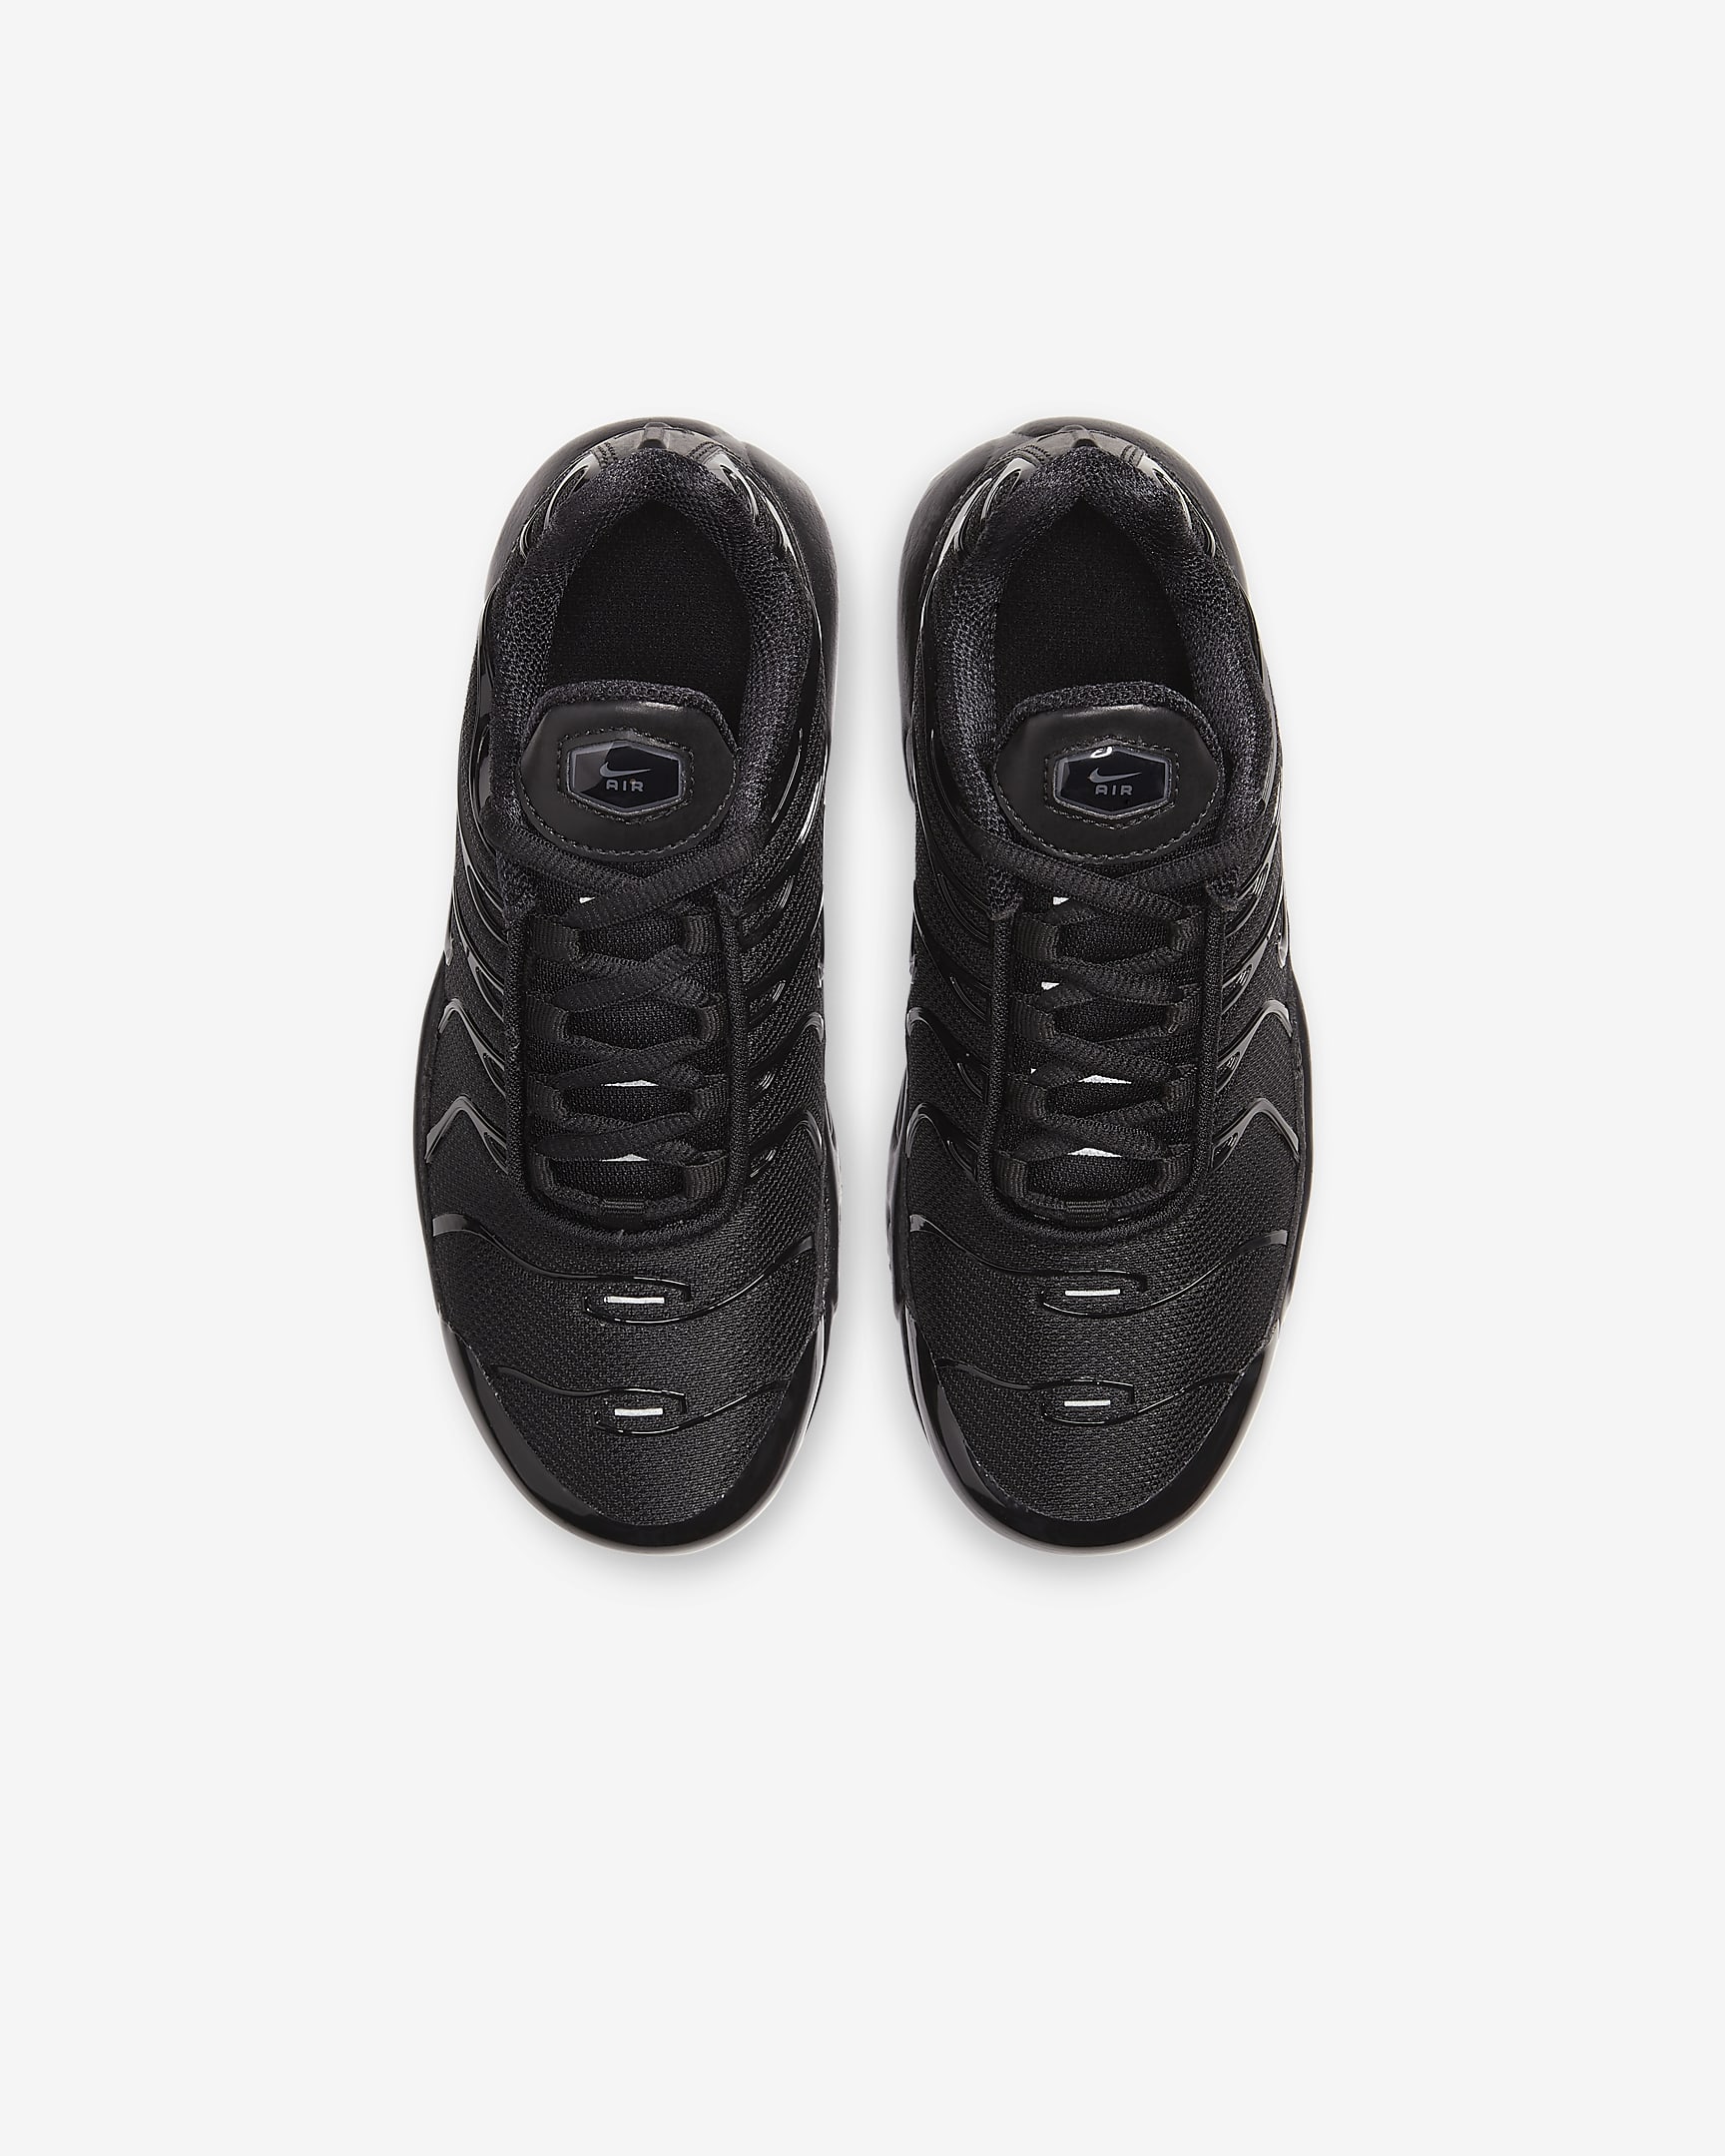 Nike Air Max Plus-sko til mindre børn - sort/sort/sort